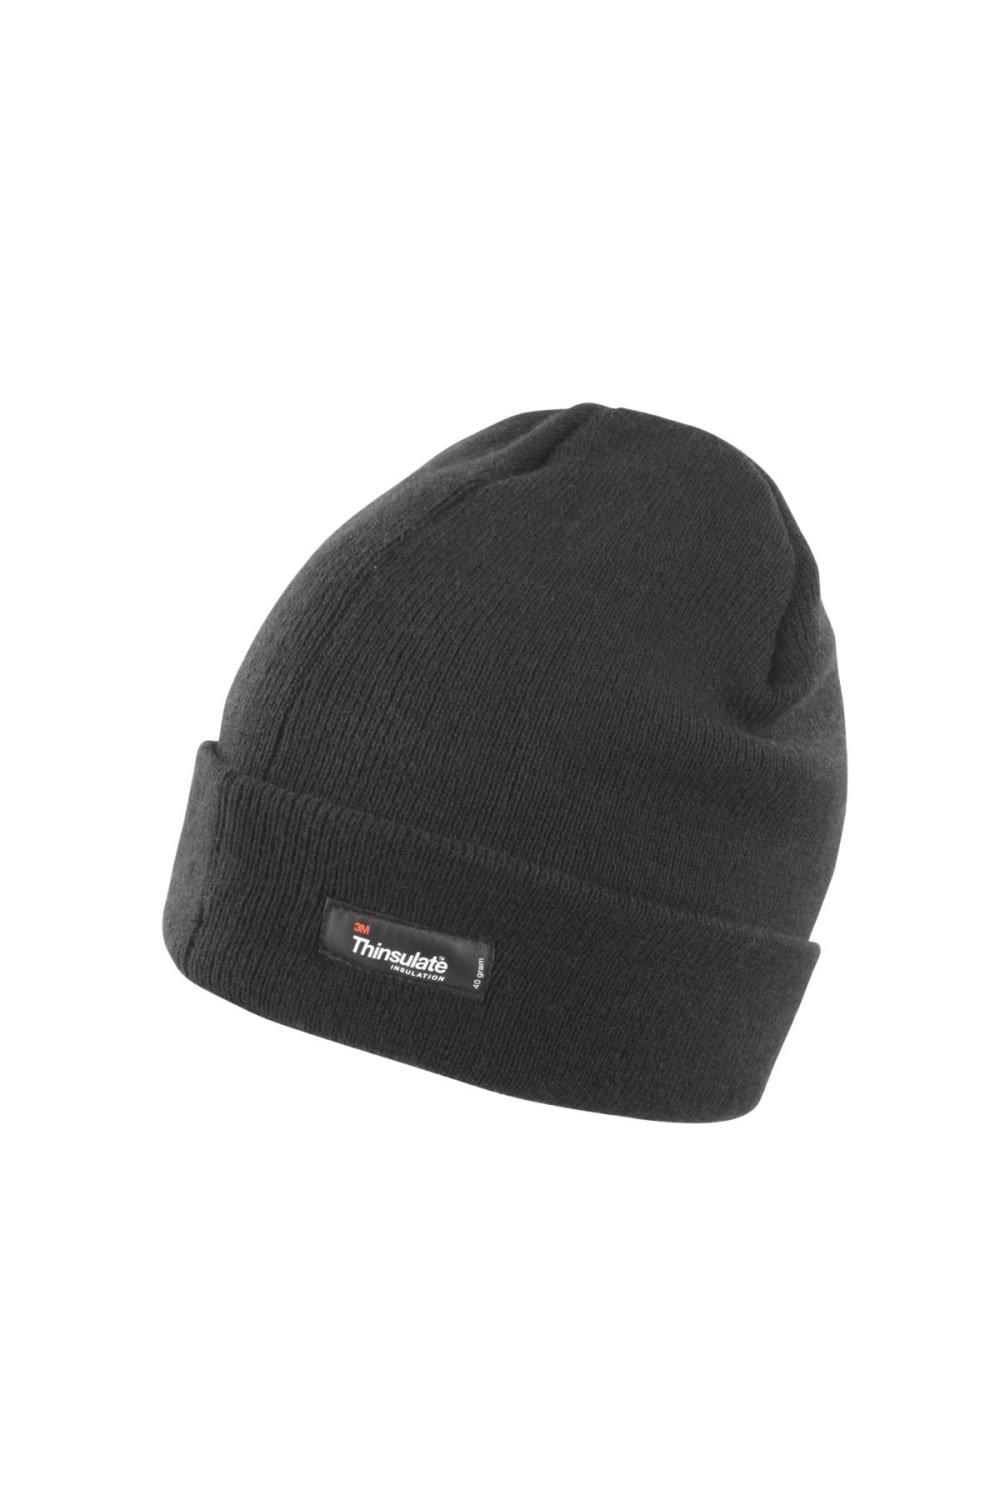 цена Легкая термозимняя шапка Thinsulate (3M, 40 г) Result, черный